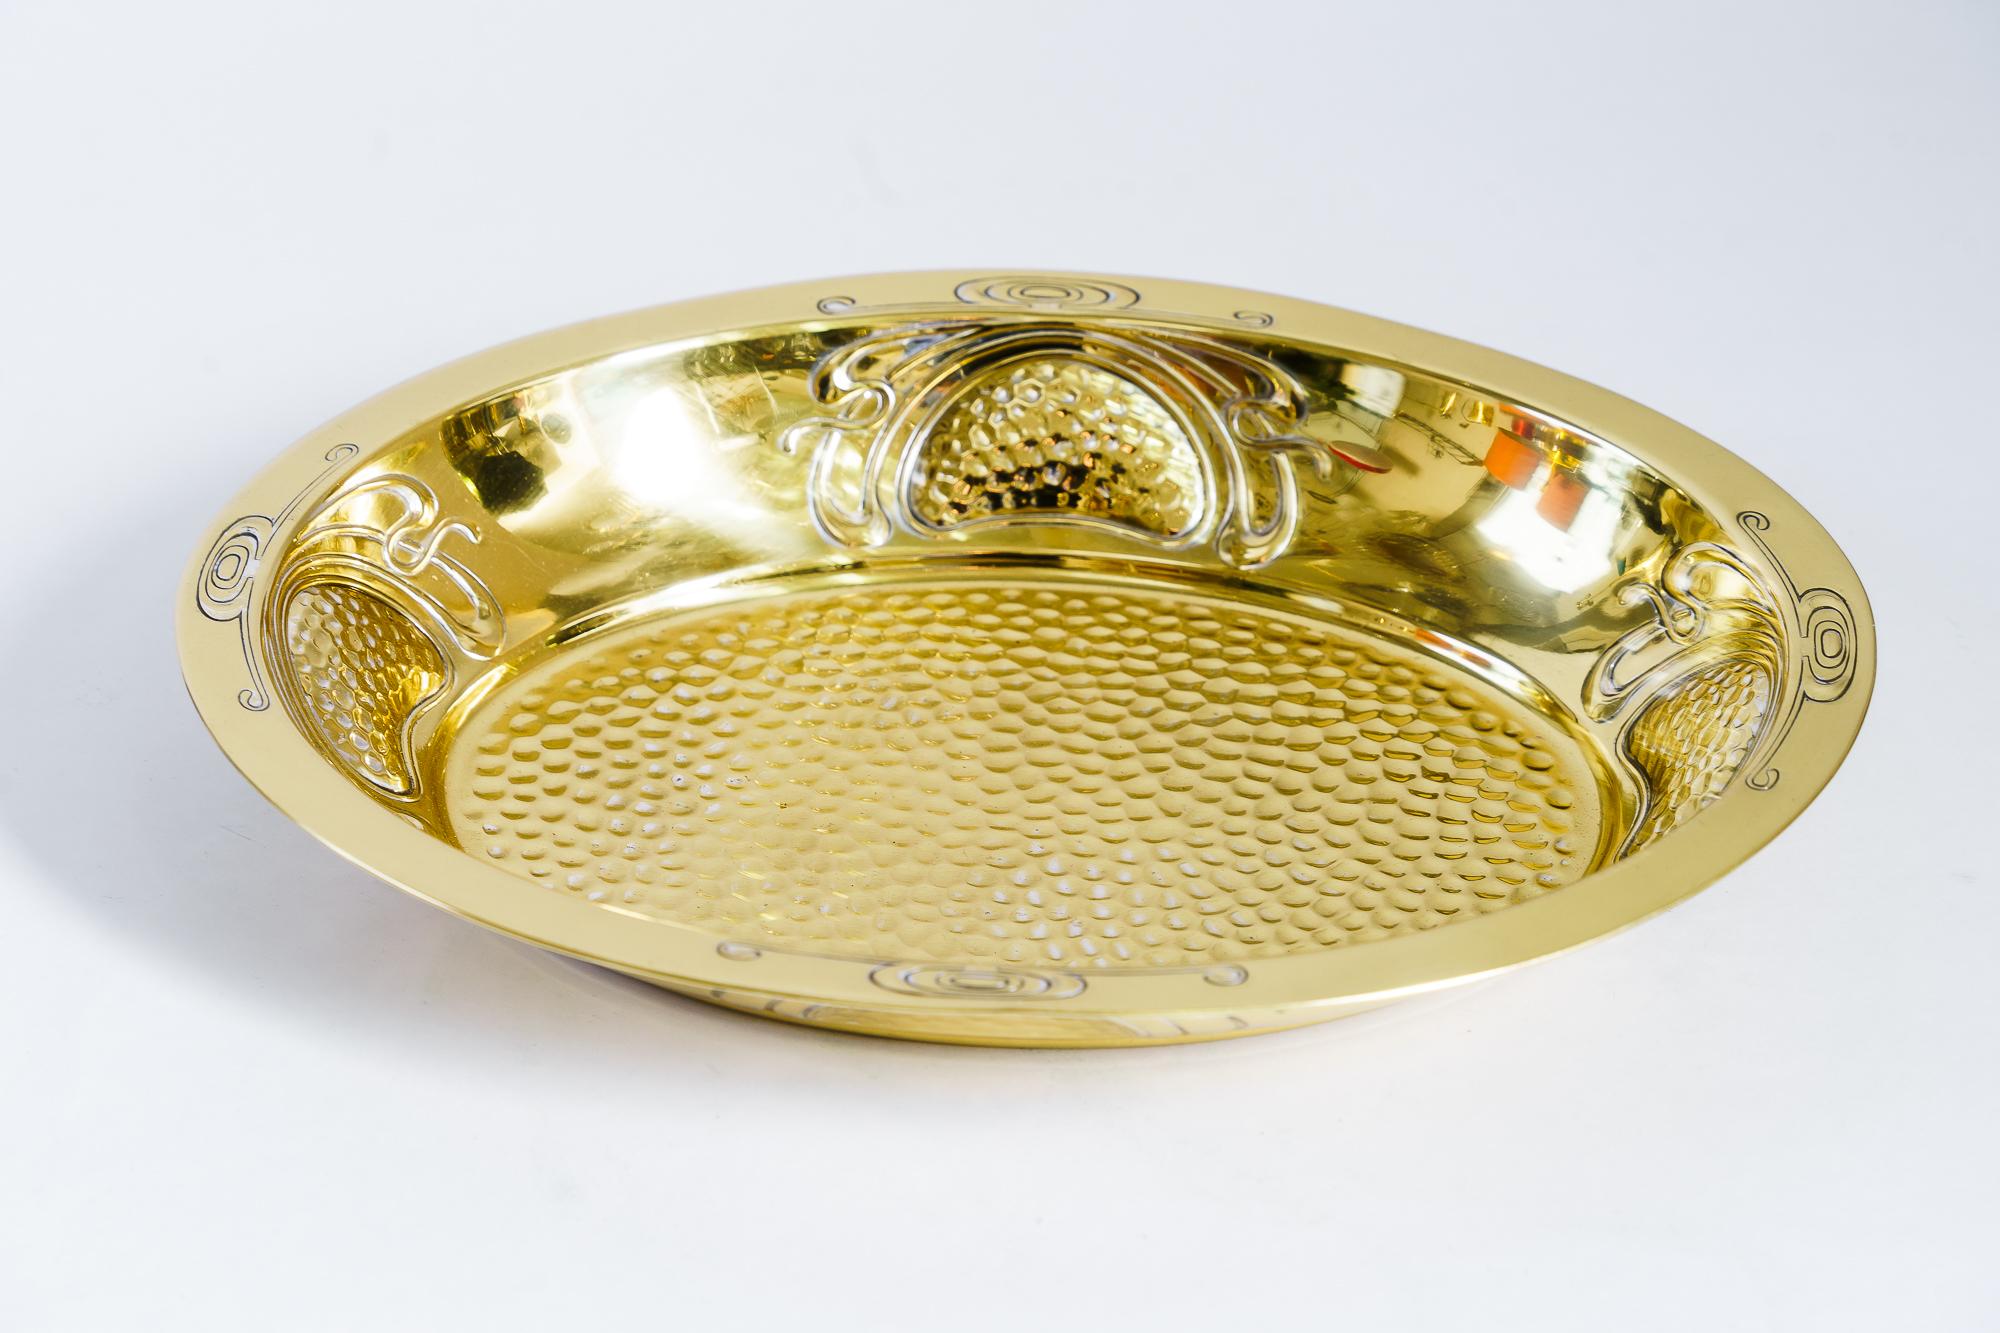 Hammered Jugendstil fruit bowl vienna around 1910s
Brass polished and stove enameled
